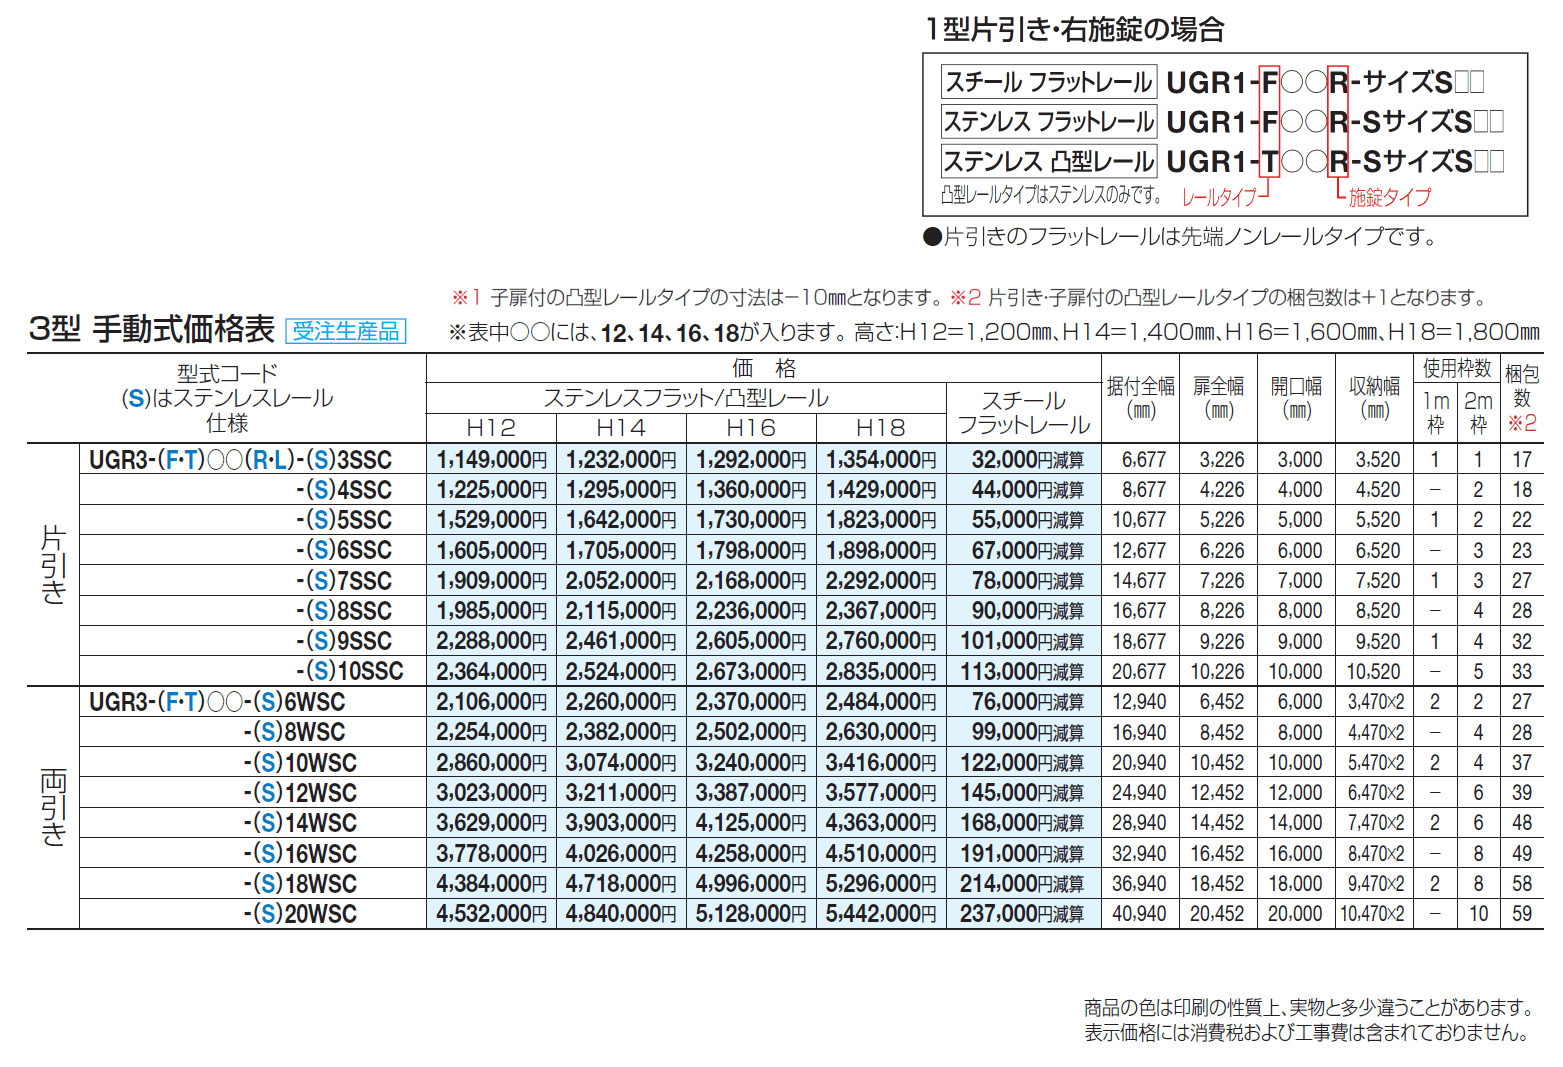 ユニットラインGR3型(手動式)_価格_1